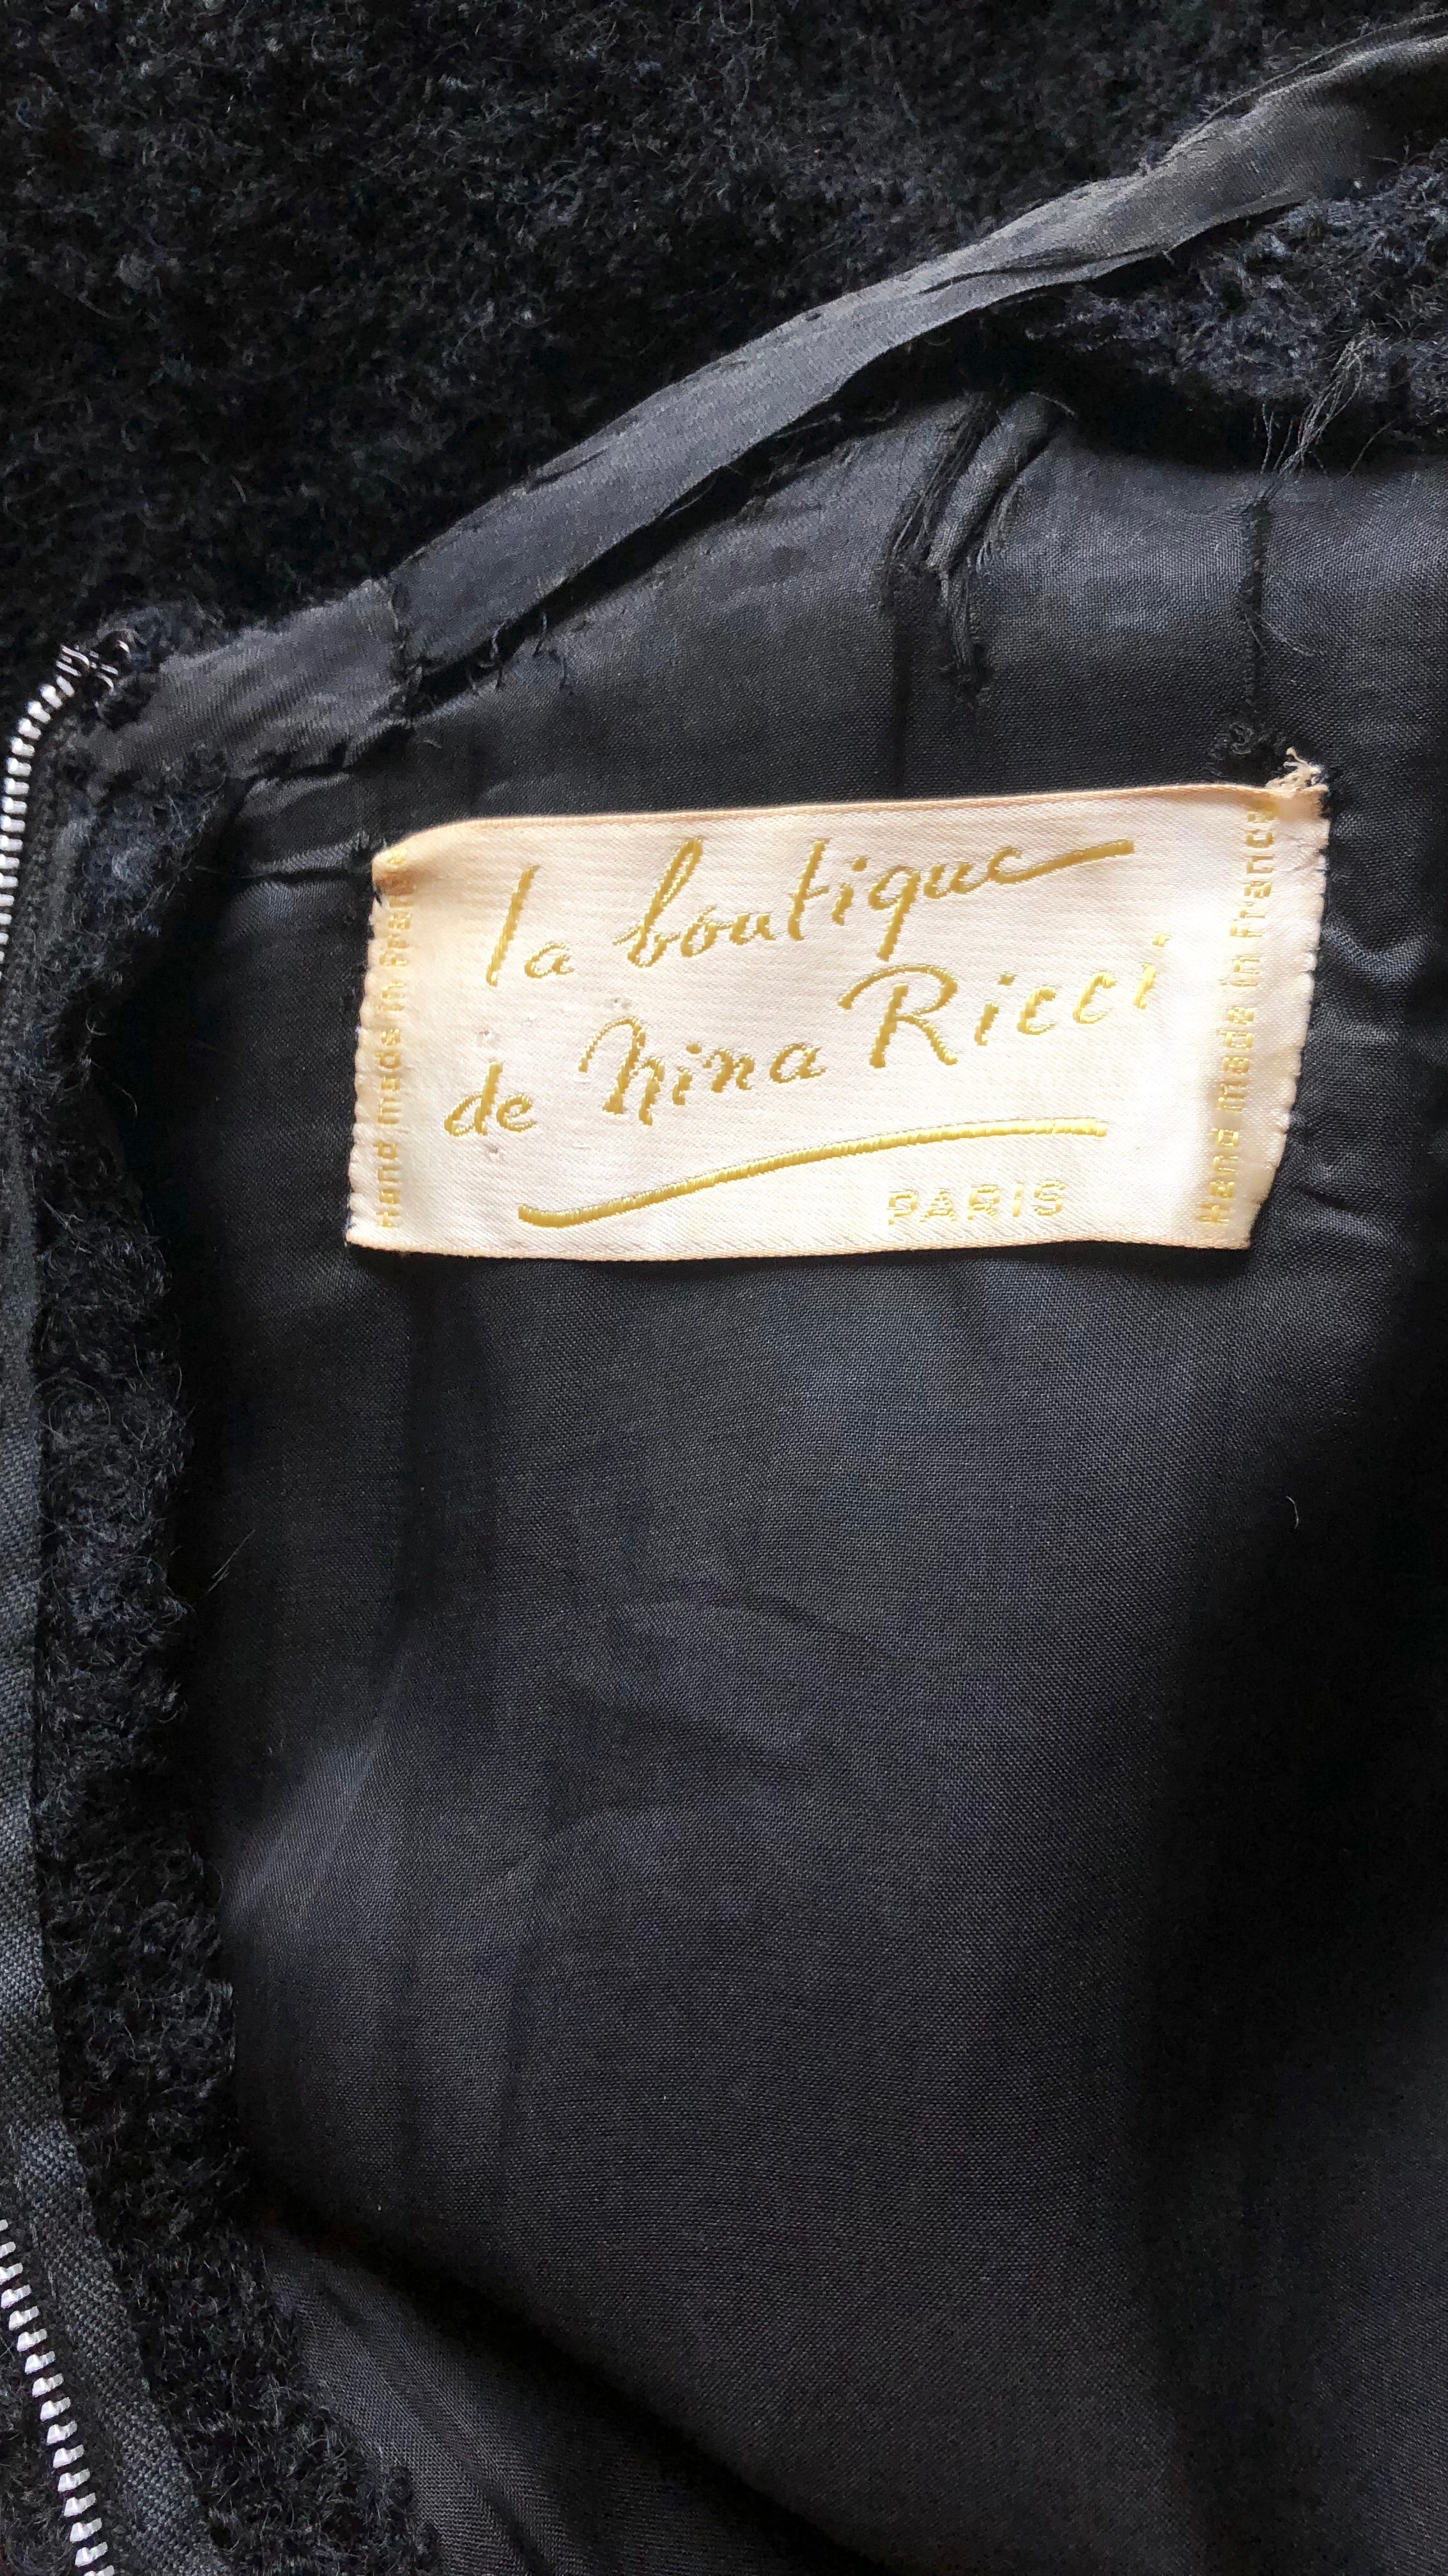 1960s Demi-Couture Black Bouclé Wool Dress